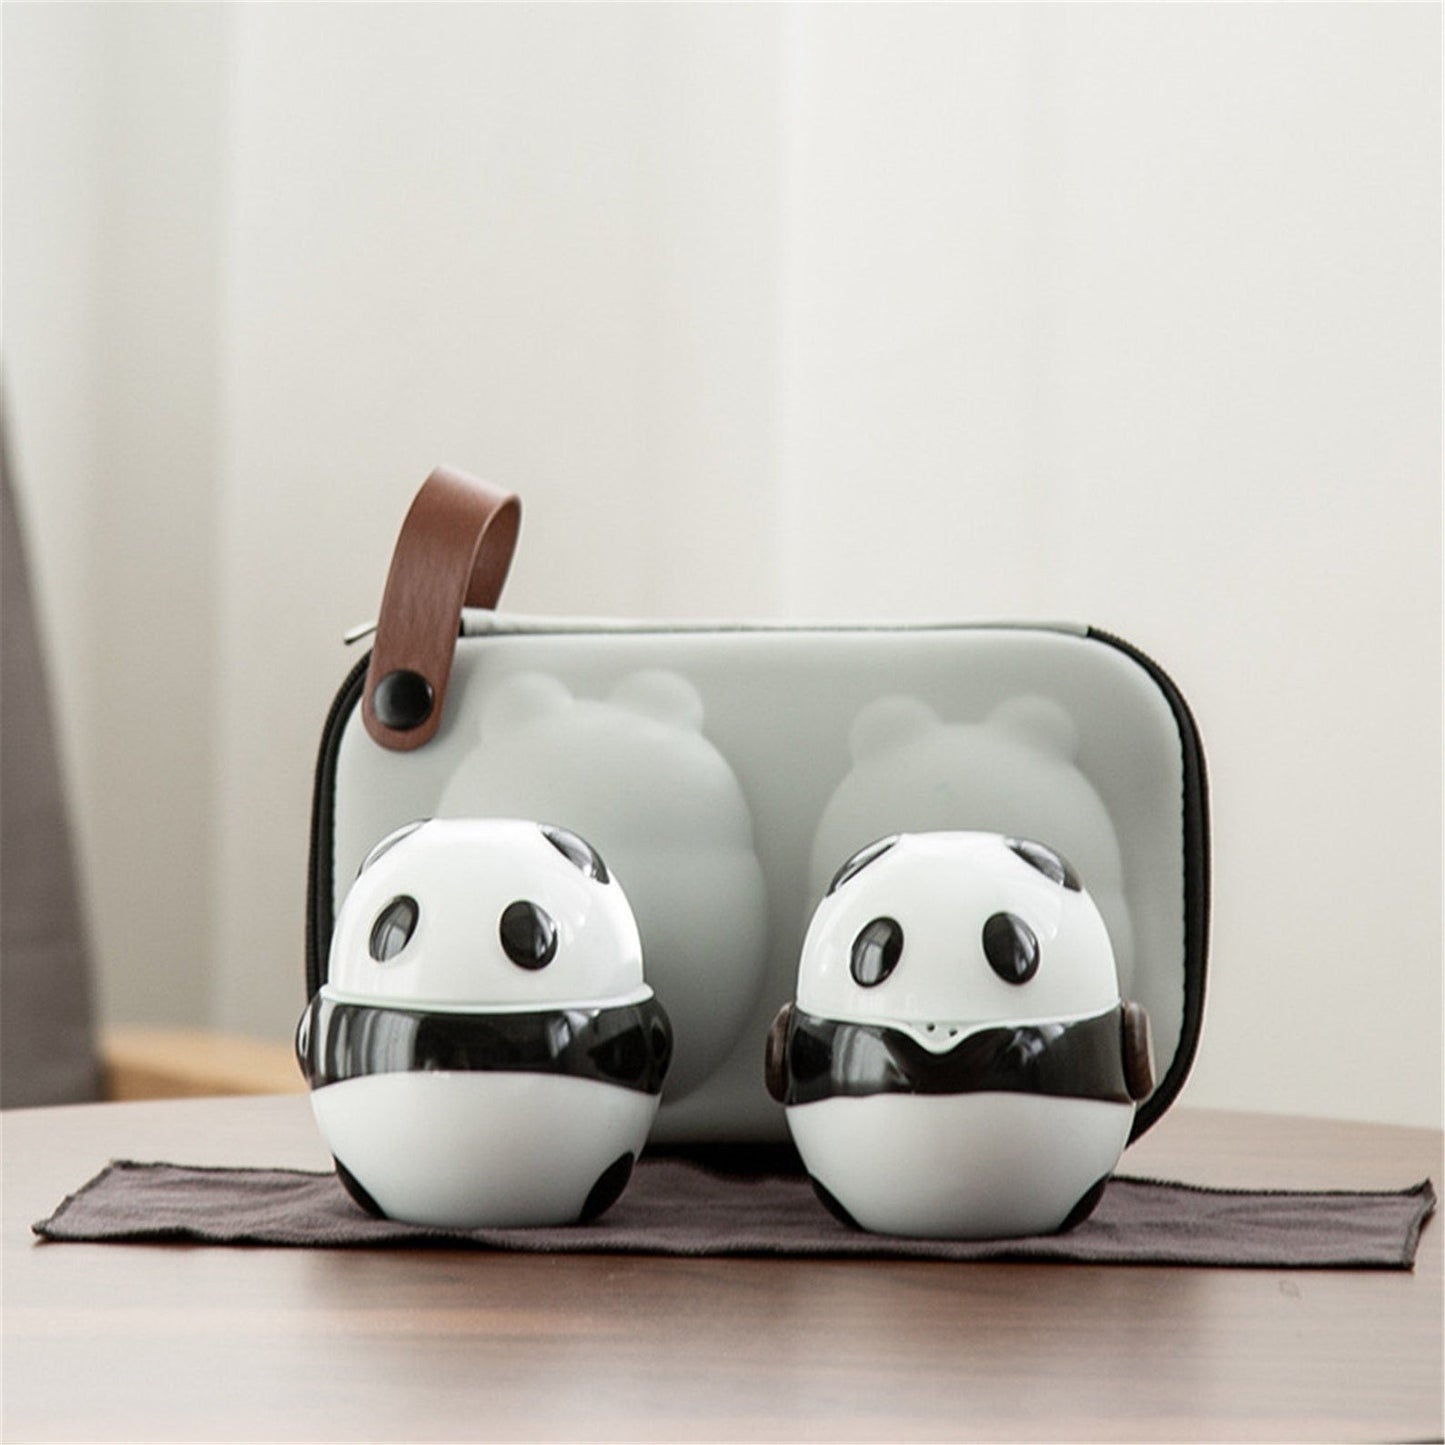 Teteras de panda de cerámica con 2 tazas de té Oficina de viajes portátiles Juego de té chino Mini Carrying Bag Filter Tup Regalo Fine